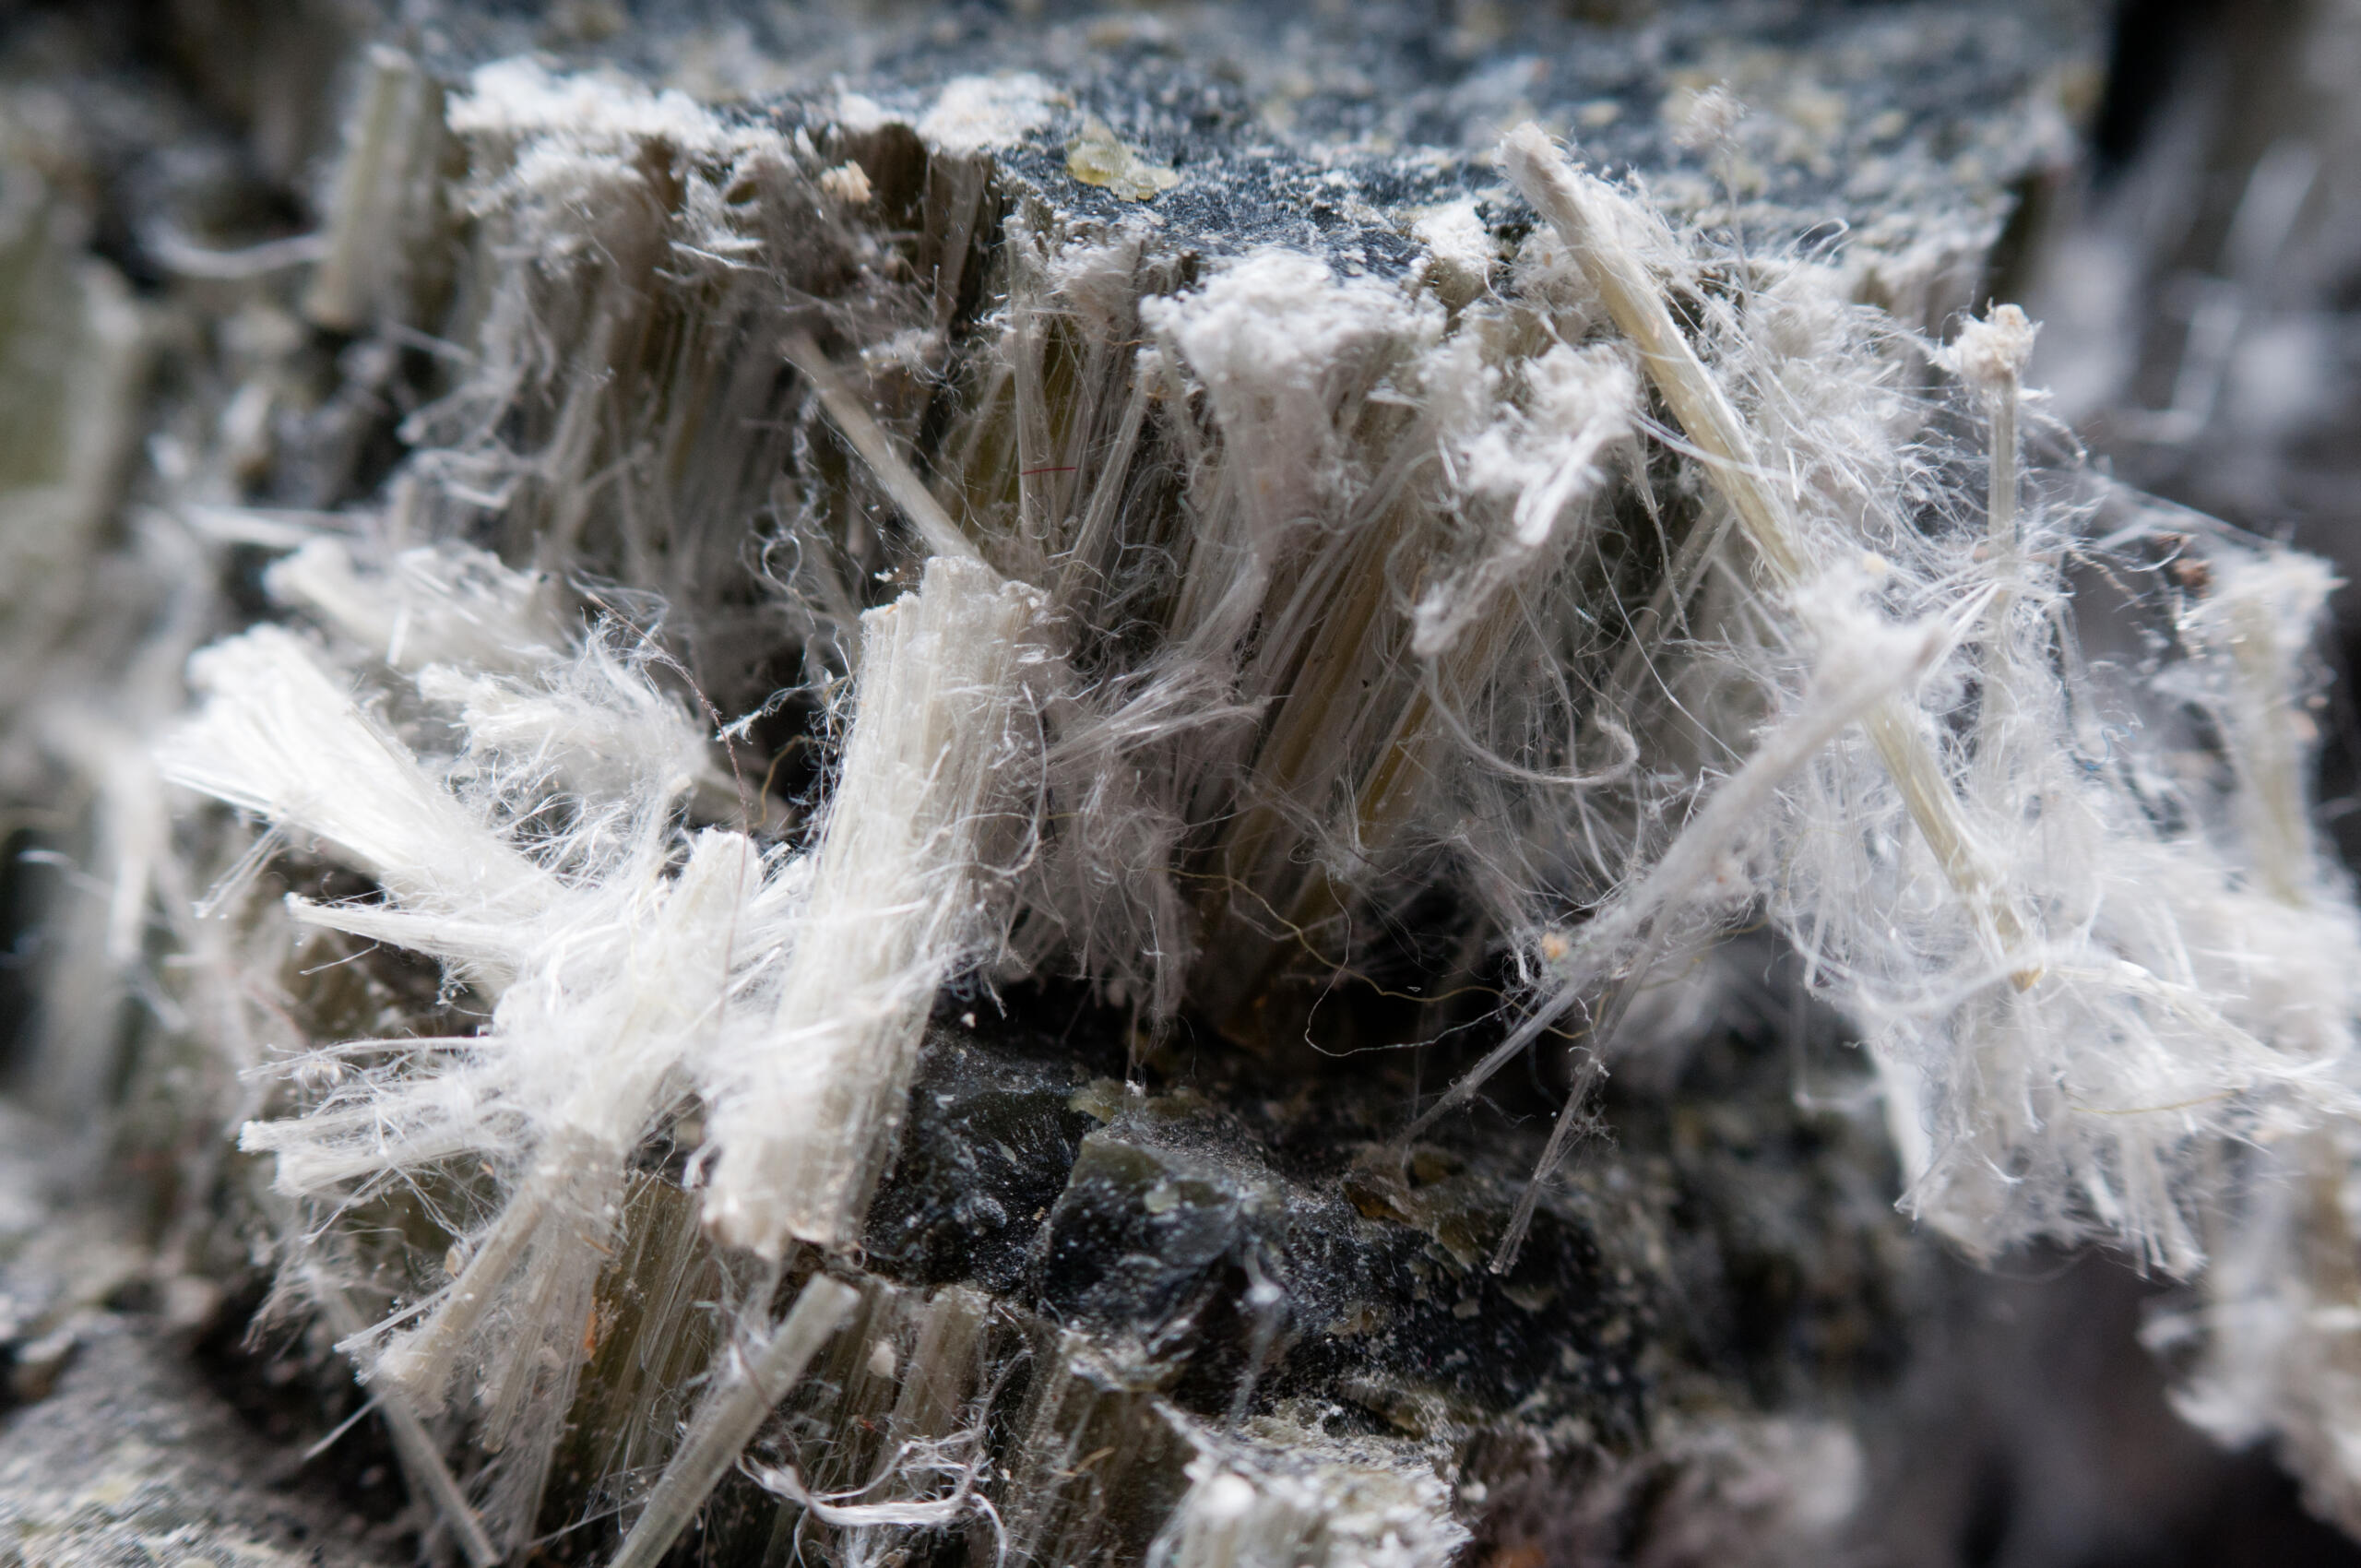 What asbestos looks like